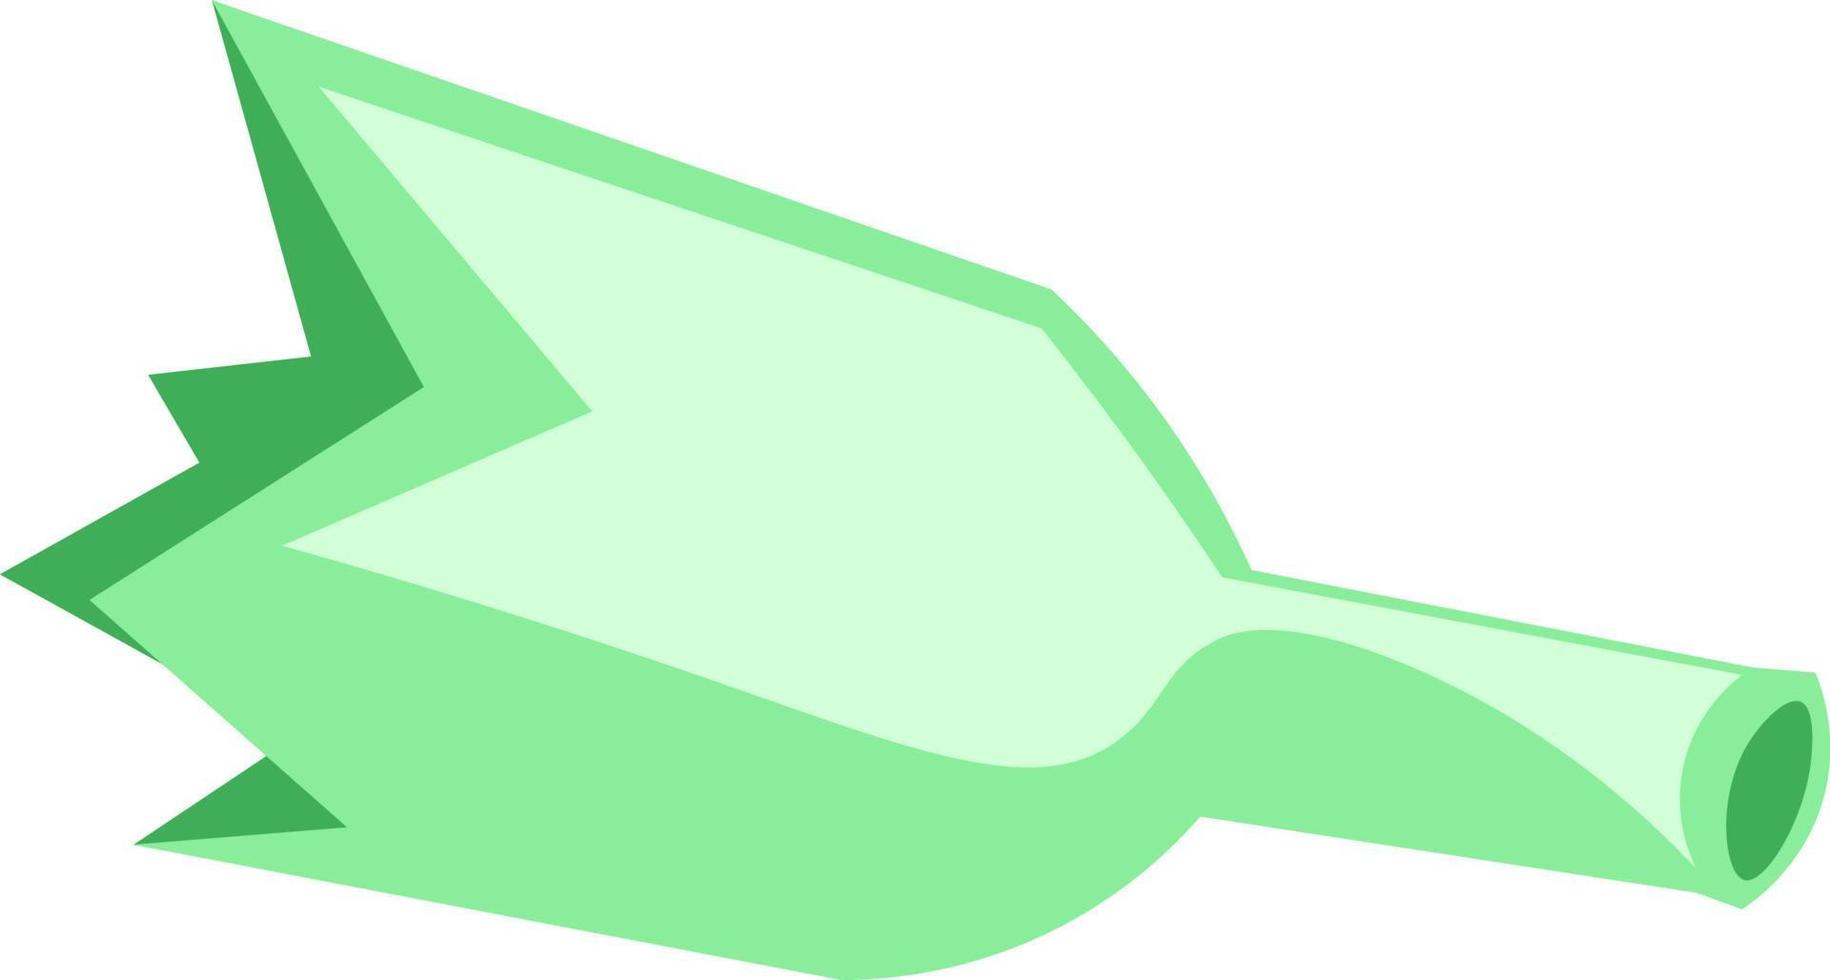 eine zerbrochene grüne Flasche, Vektor- oder Farbillustration. vektor